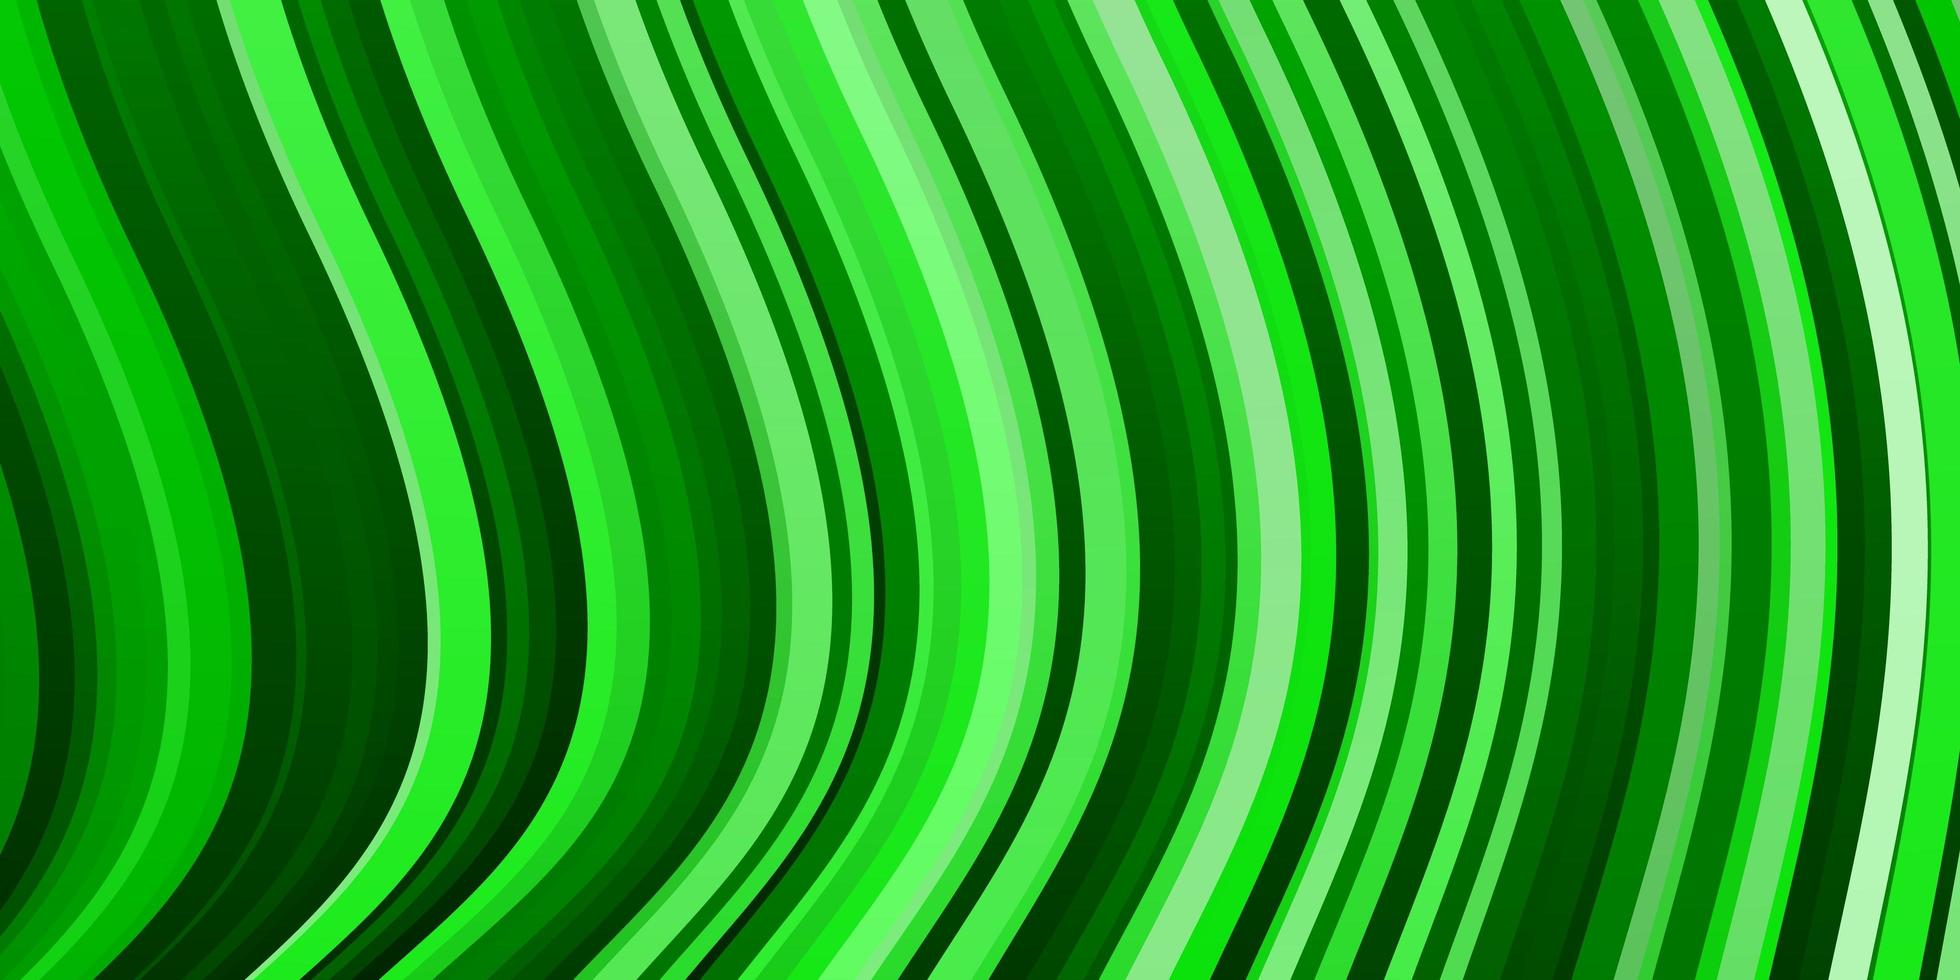 toile de fond de vecteur vert clair avec arc circulaire.